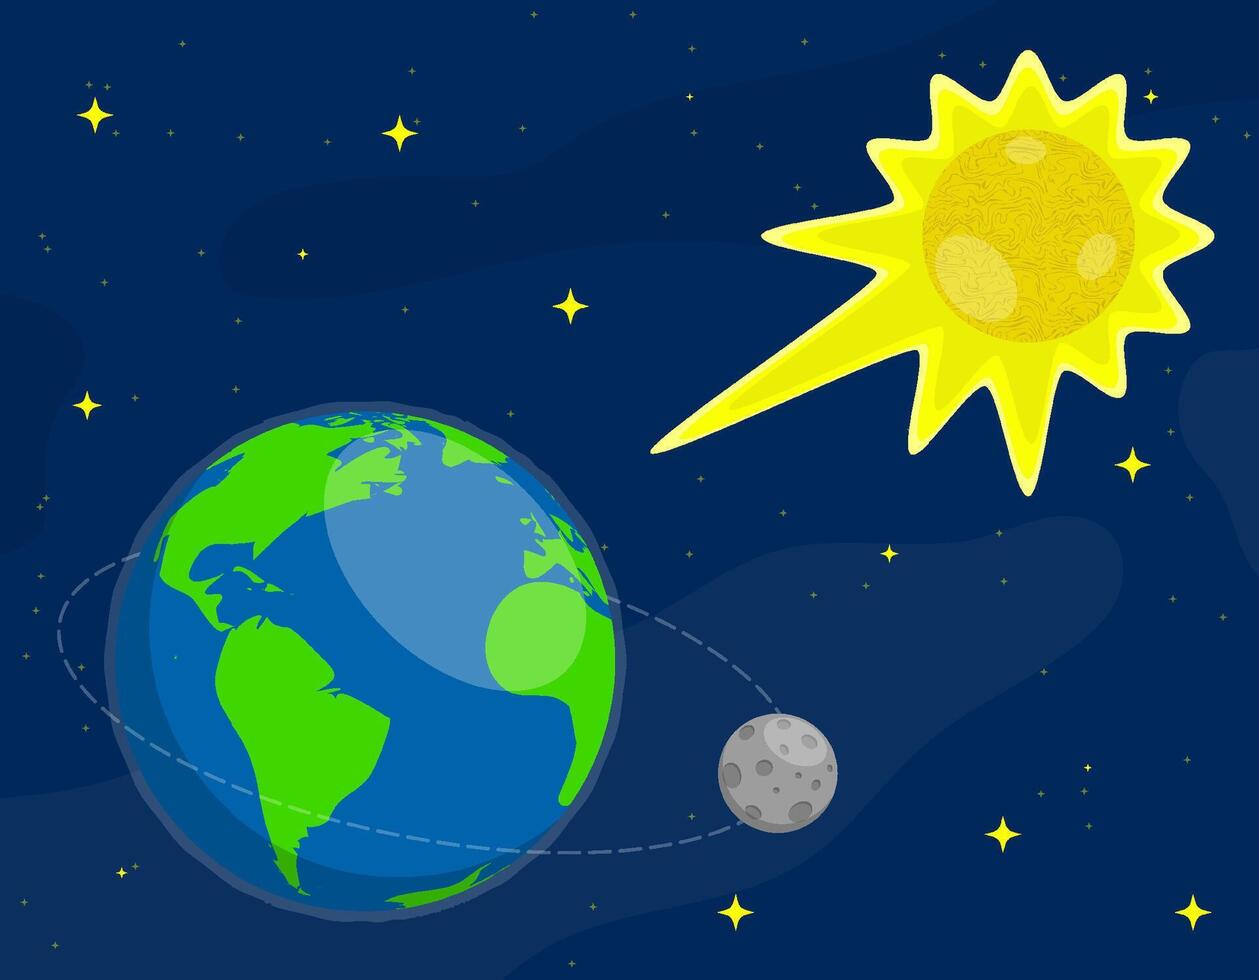 Dom brilla en superficie de tierra y Luna. estrella de planeta tierra. astronomía, observación de Dom actividad y clima. de colores vector en dibujos animados estilo